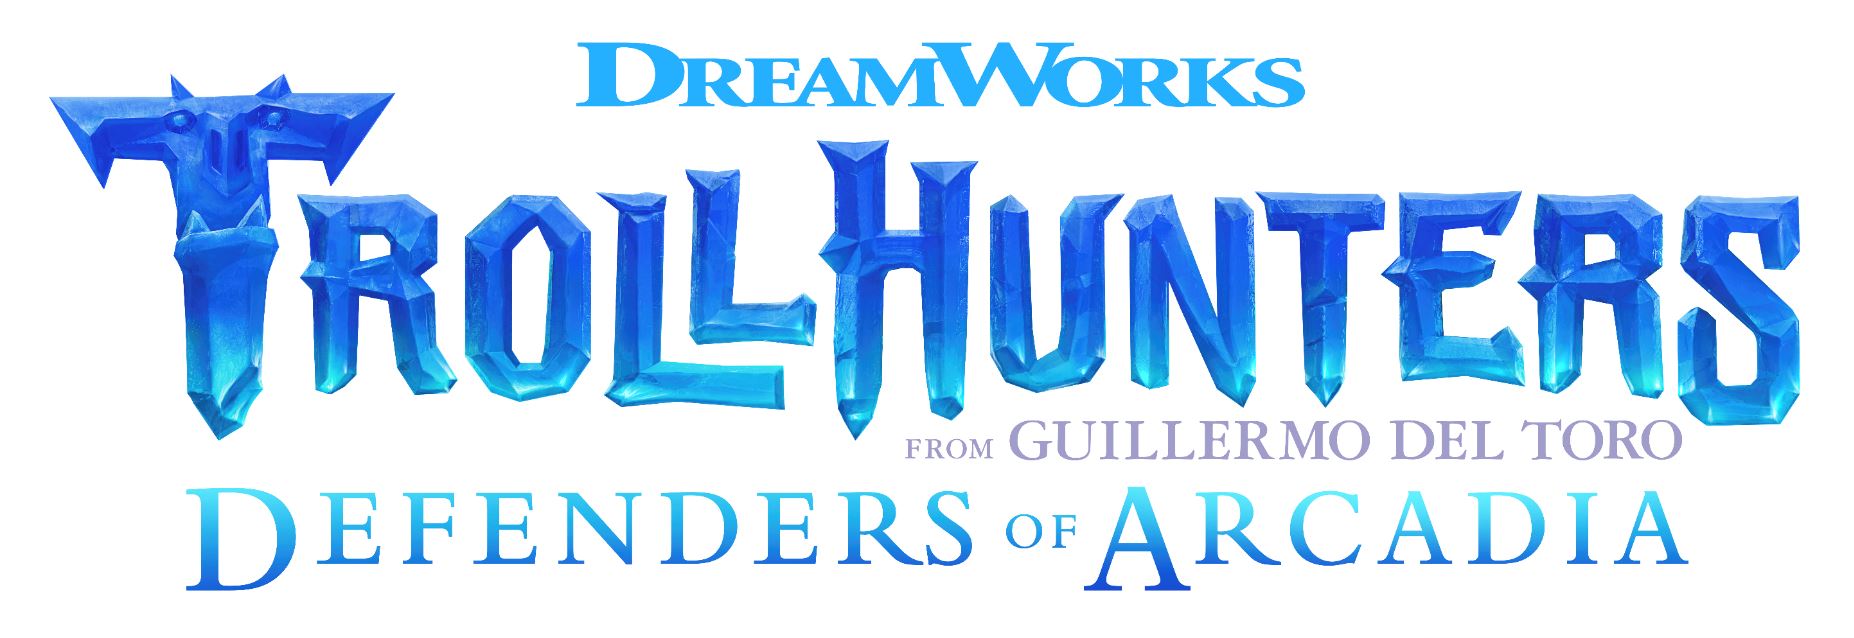 Dreamworks Trollhunters Defenders of Arcadia